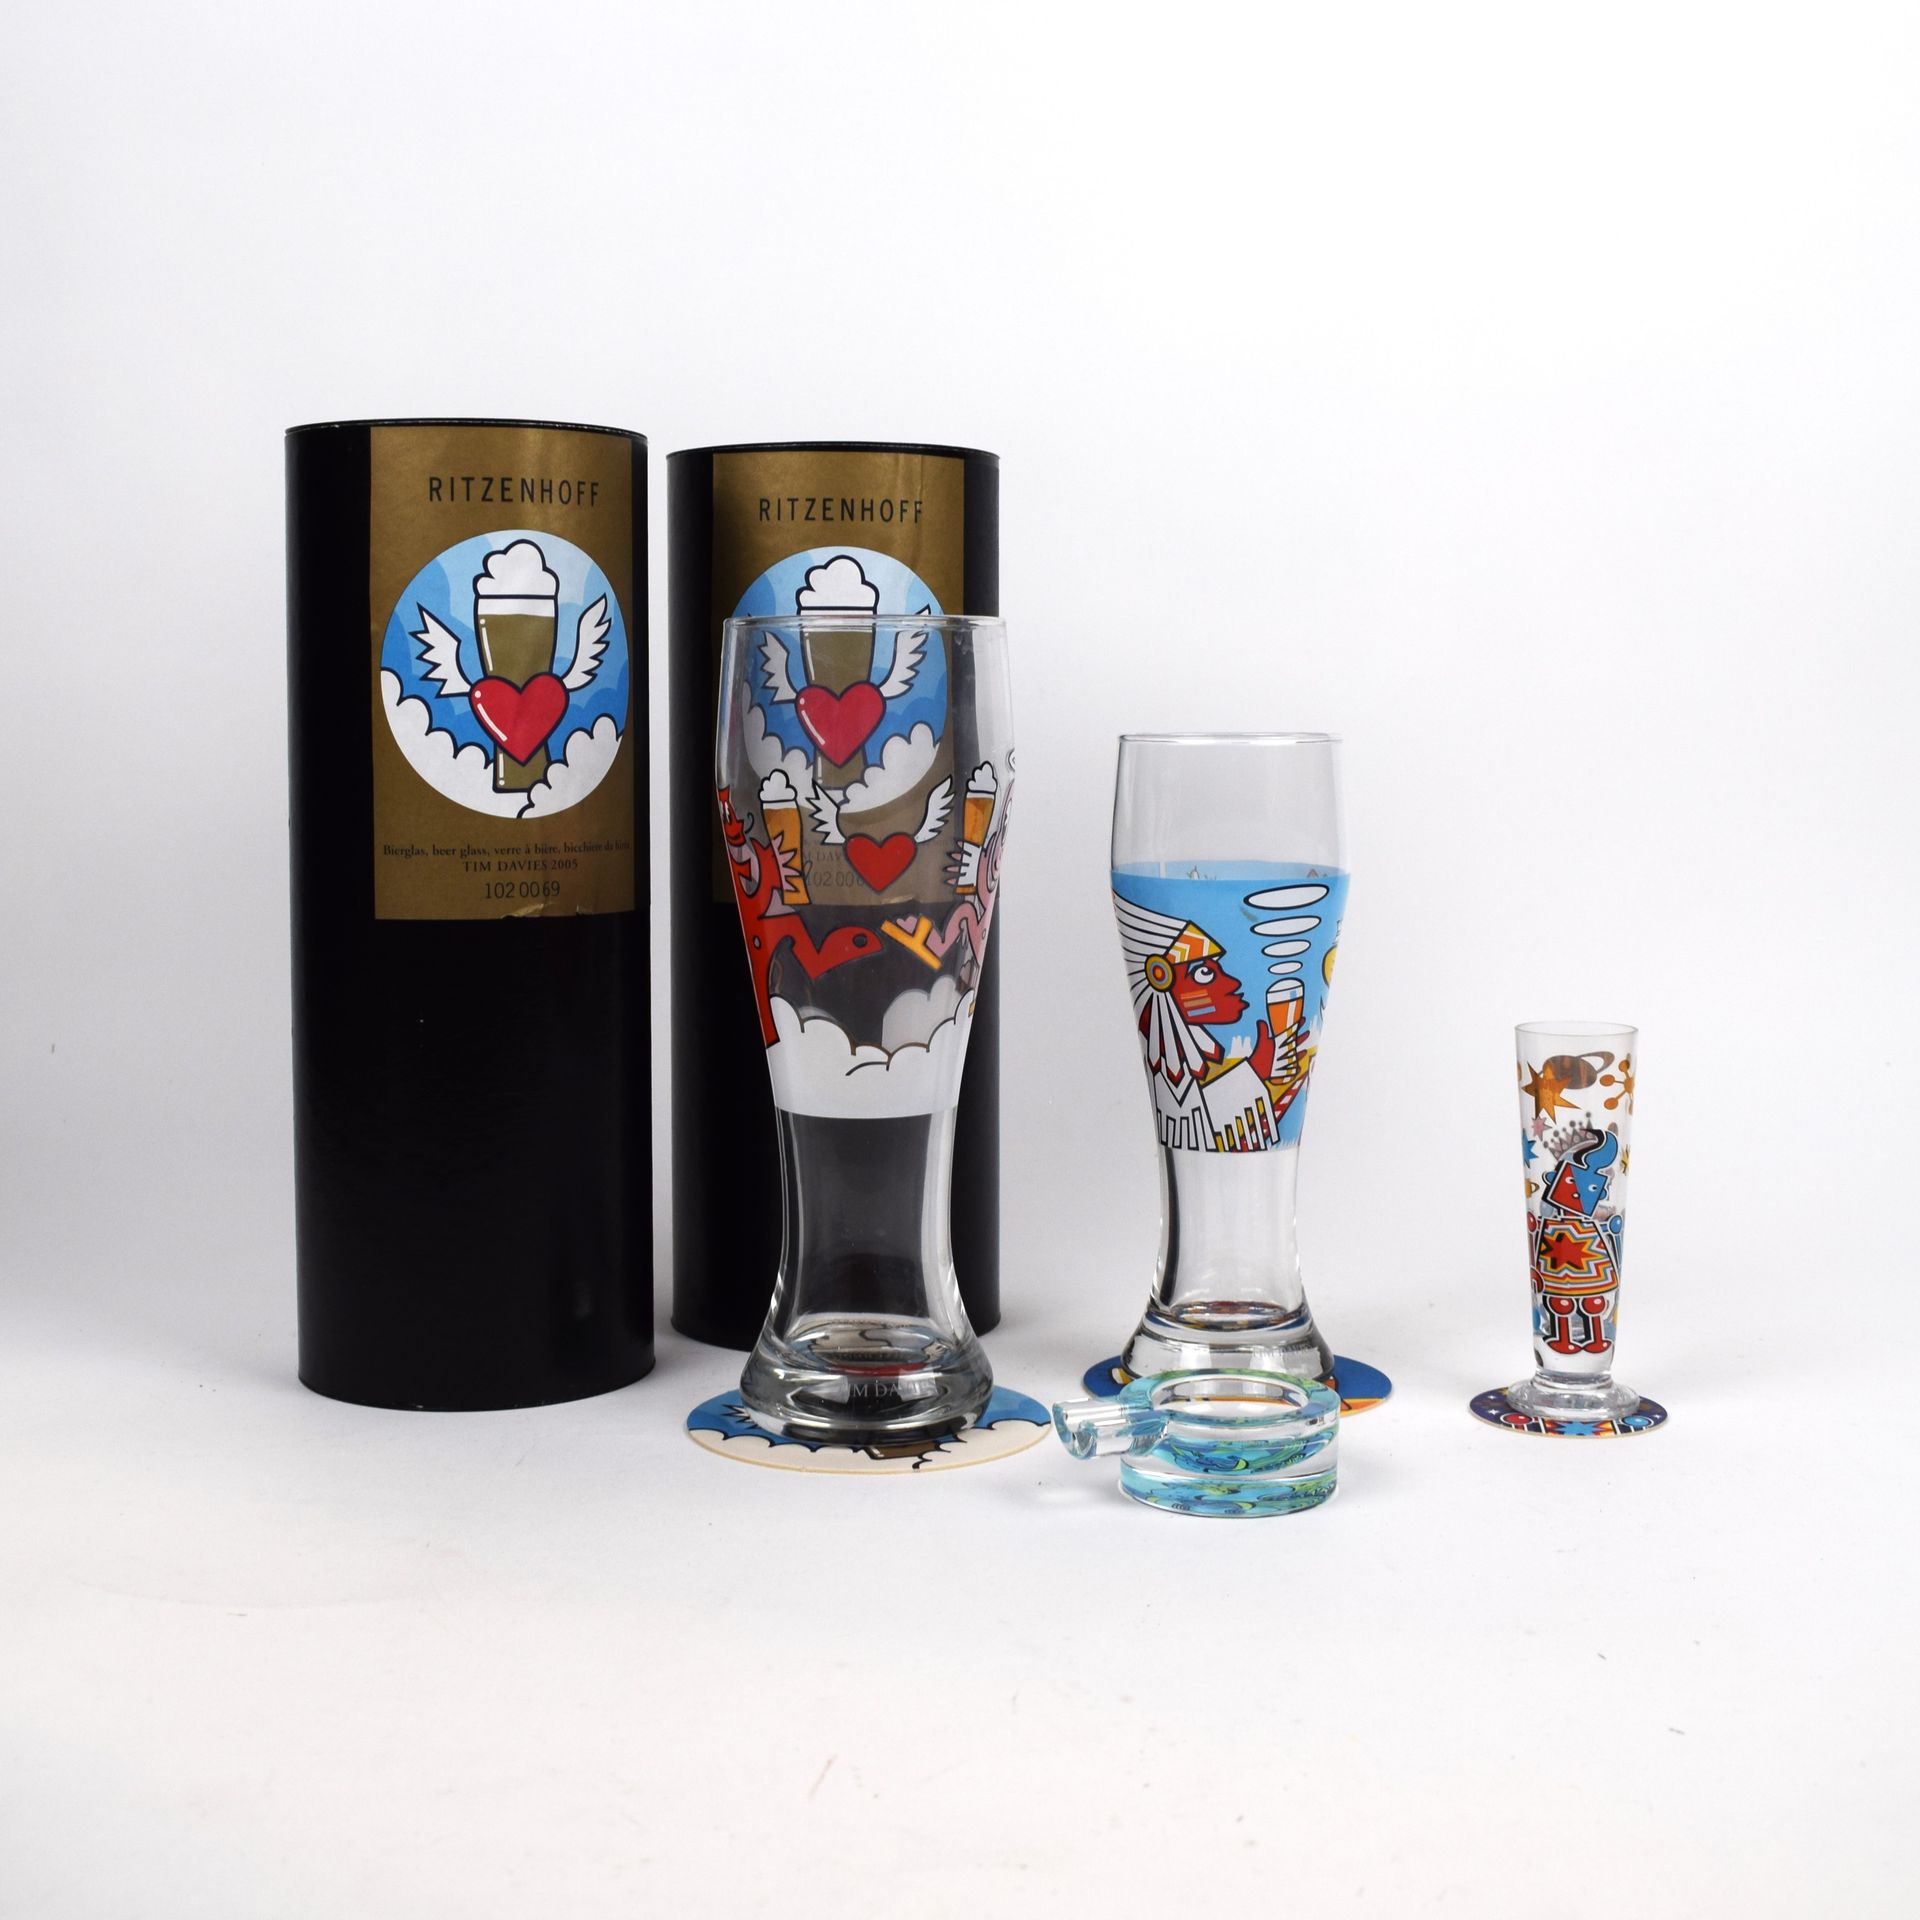 Null RITZENHOFF. Collection de verre dessinée par Tim DAVIES :
- 3 verres à bièr&hellip;